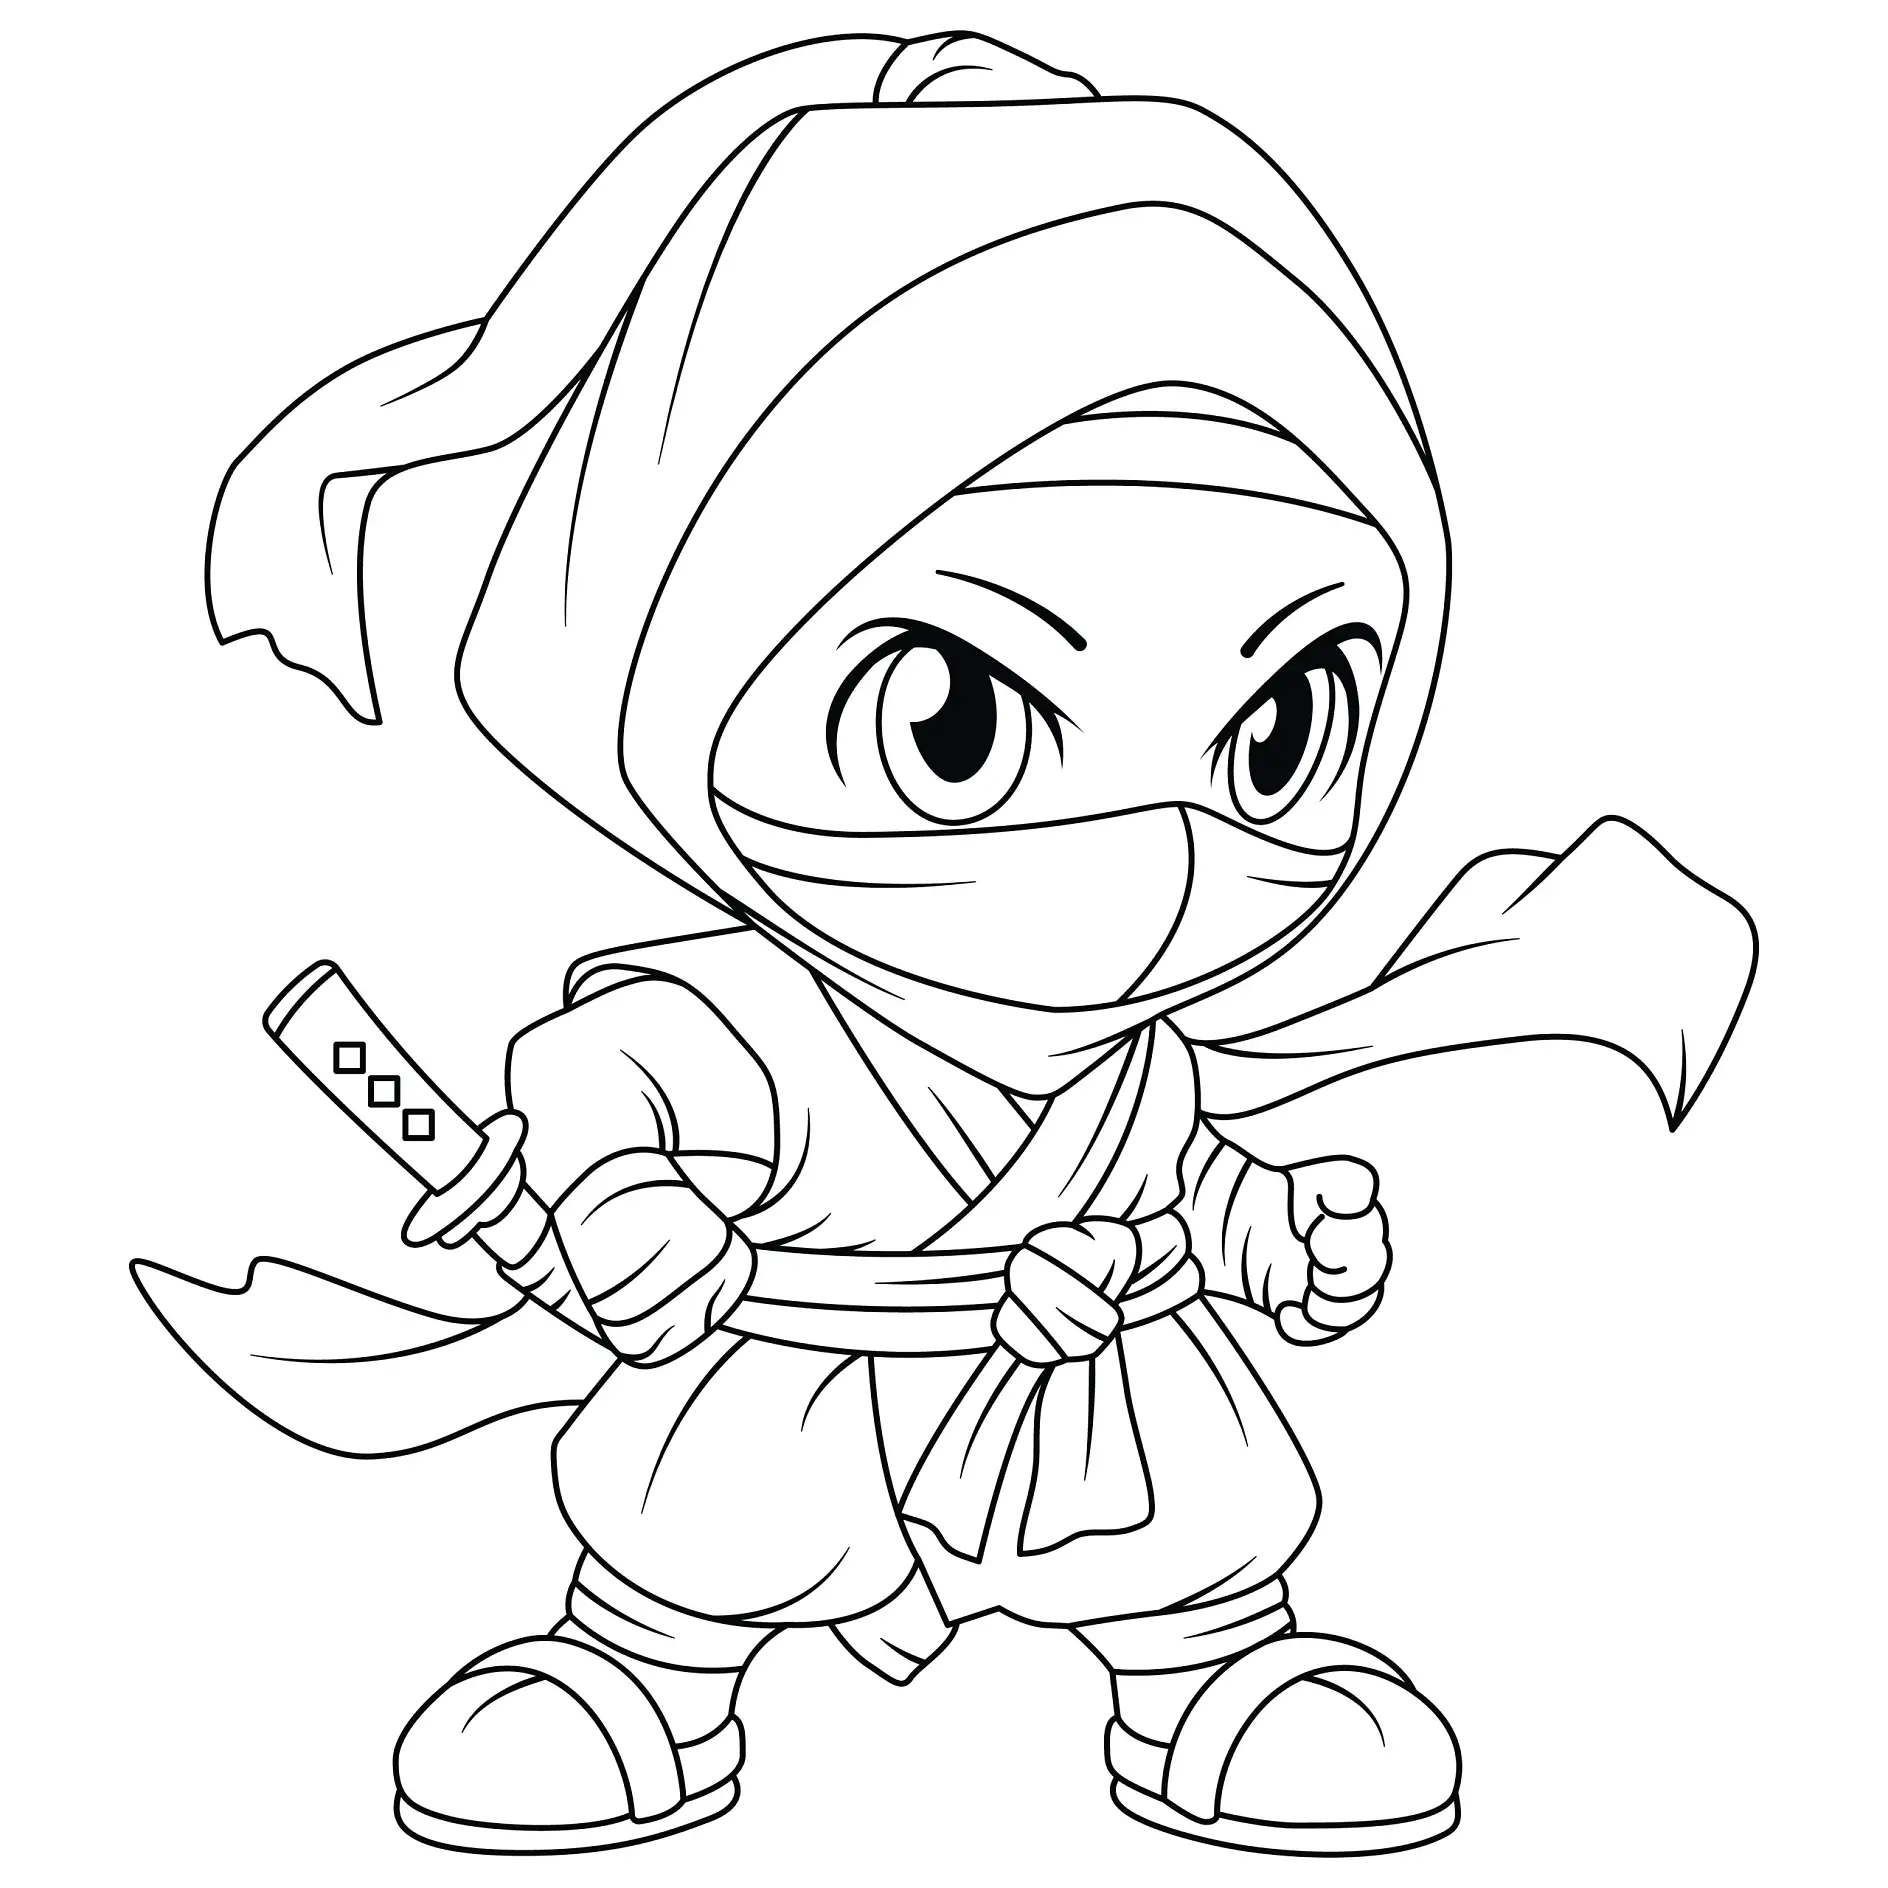 Ausmalbild Ninja mit Kopftuch und bereitem Schwert